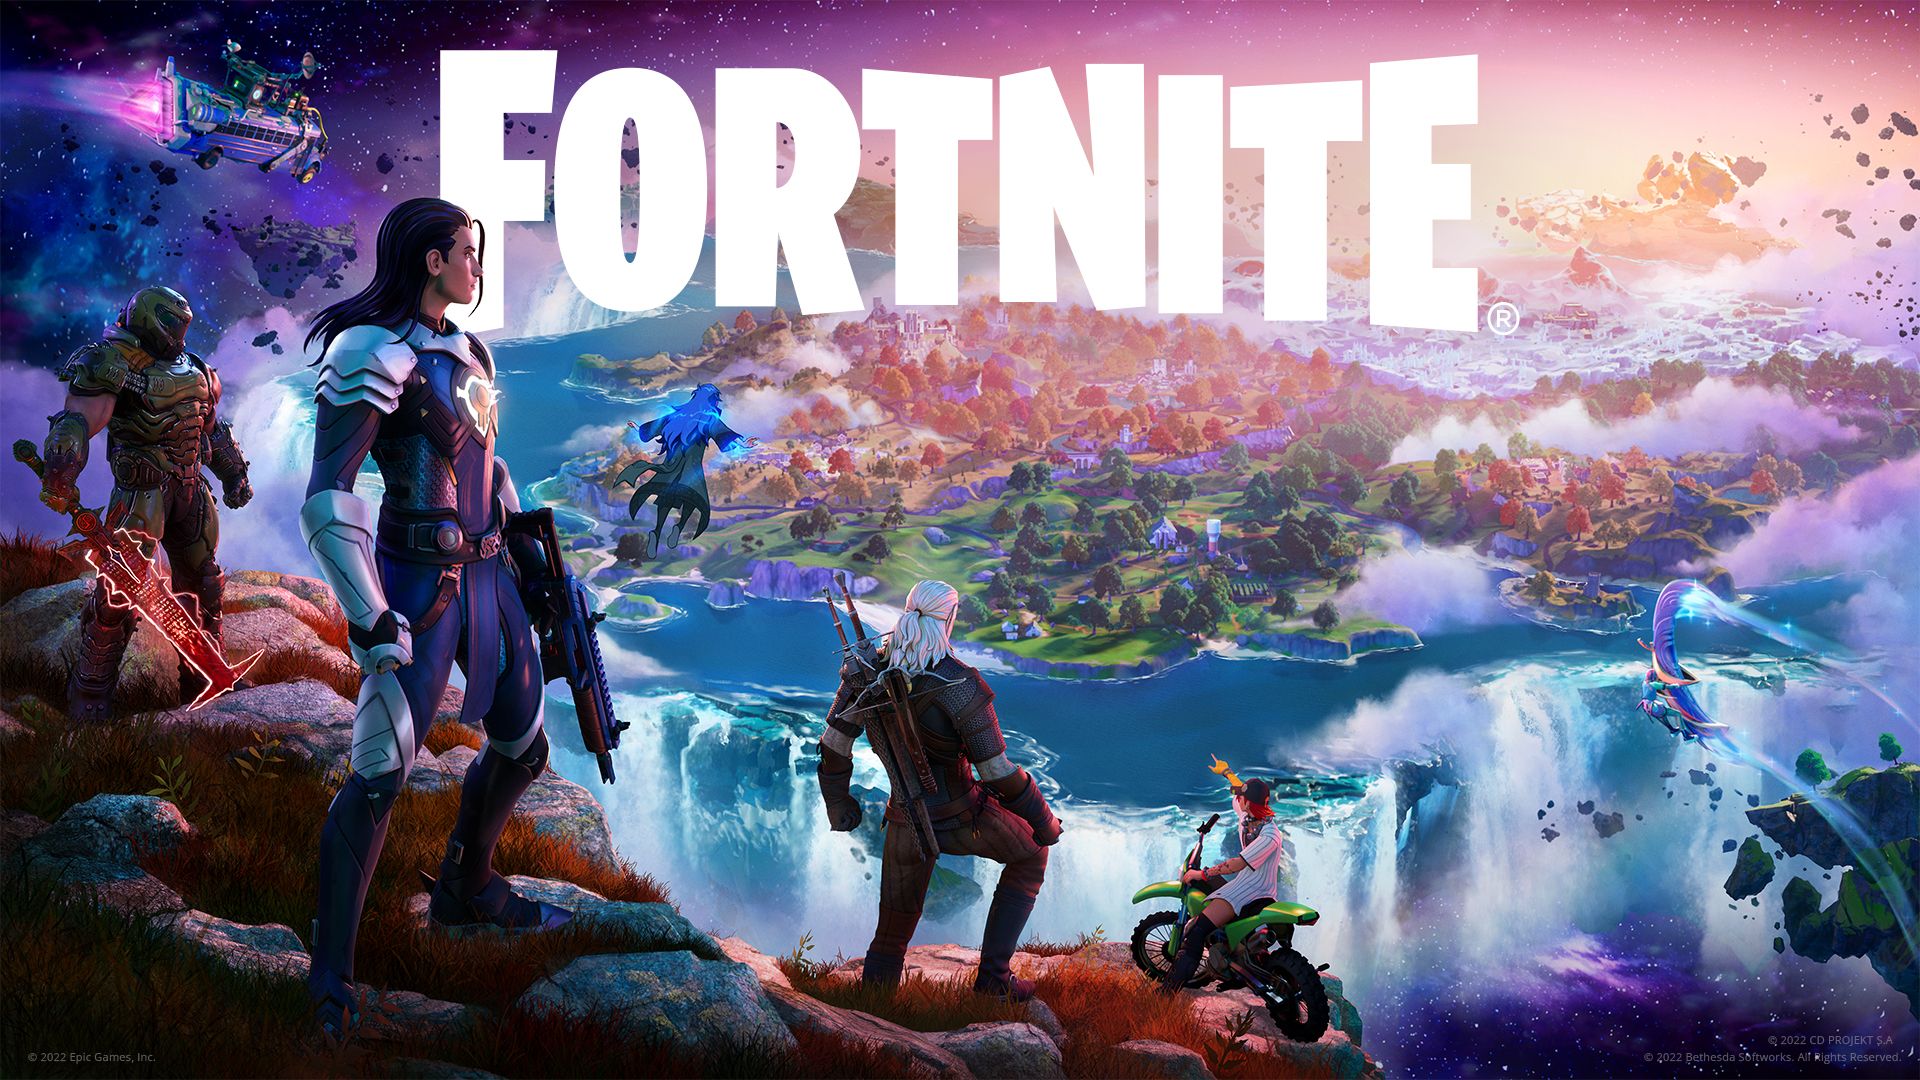 Personagens de Fortnite em uma encosta com uma ilha ao fundo e o logotipo de Fortnite no centro